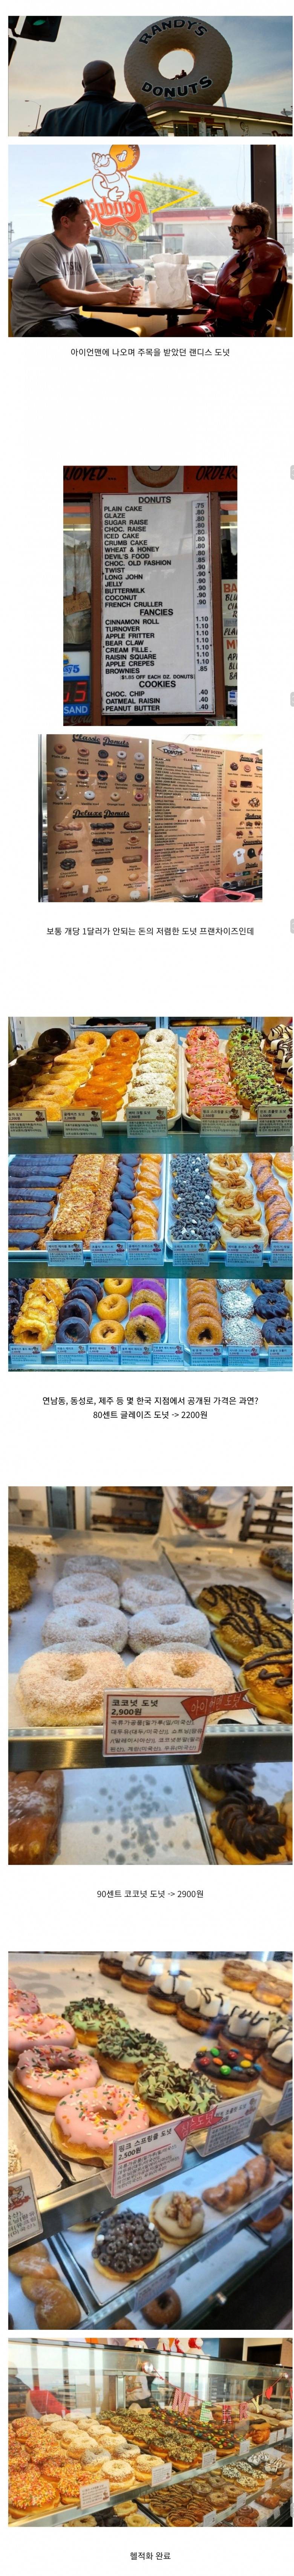 20210123234938_tgggiqov.jpg : 한국에 상륙한 아이언맨 도넛으로 유명한 랜디스 도넛